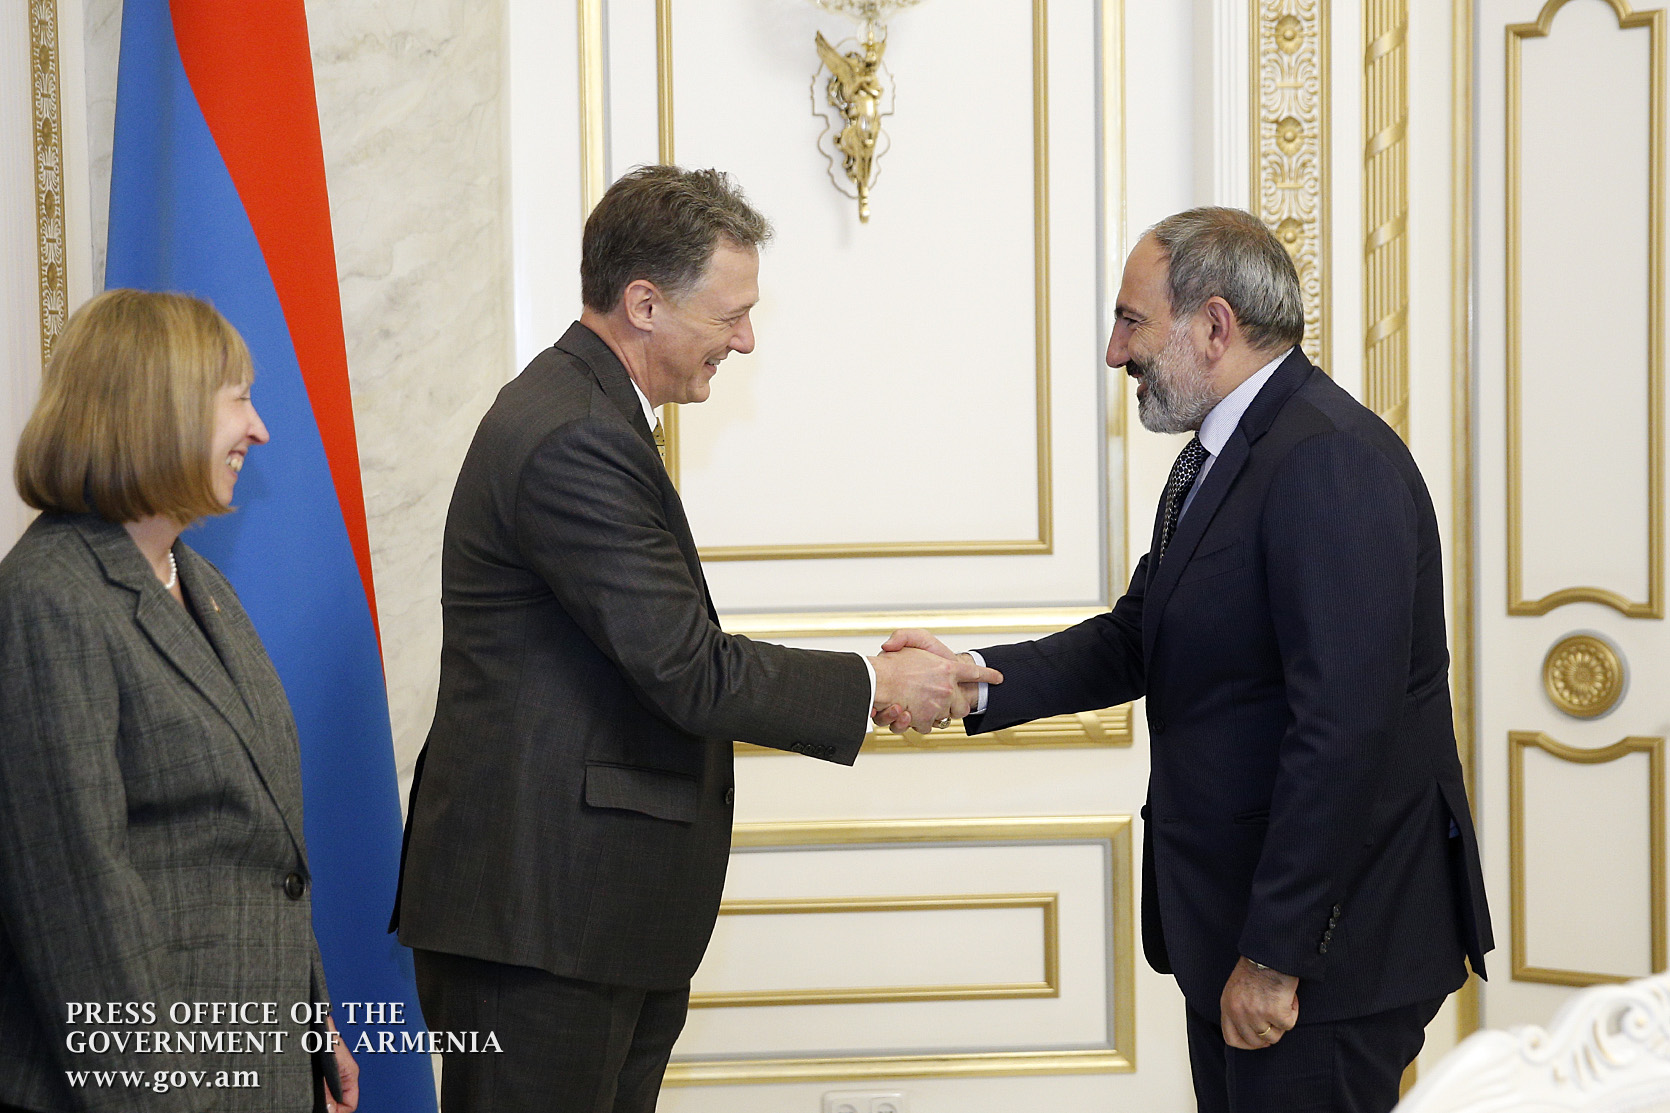 США заинтересованы в развитии отношений с Арменией: Джордж Кент — Николу Пашиняну